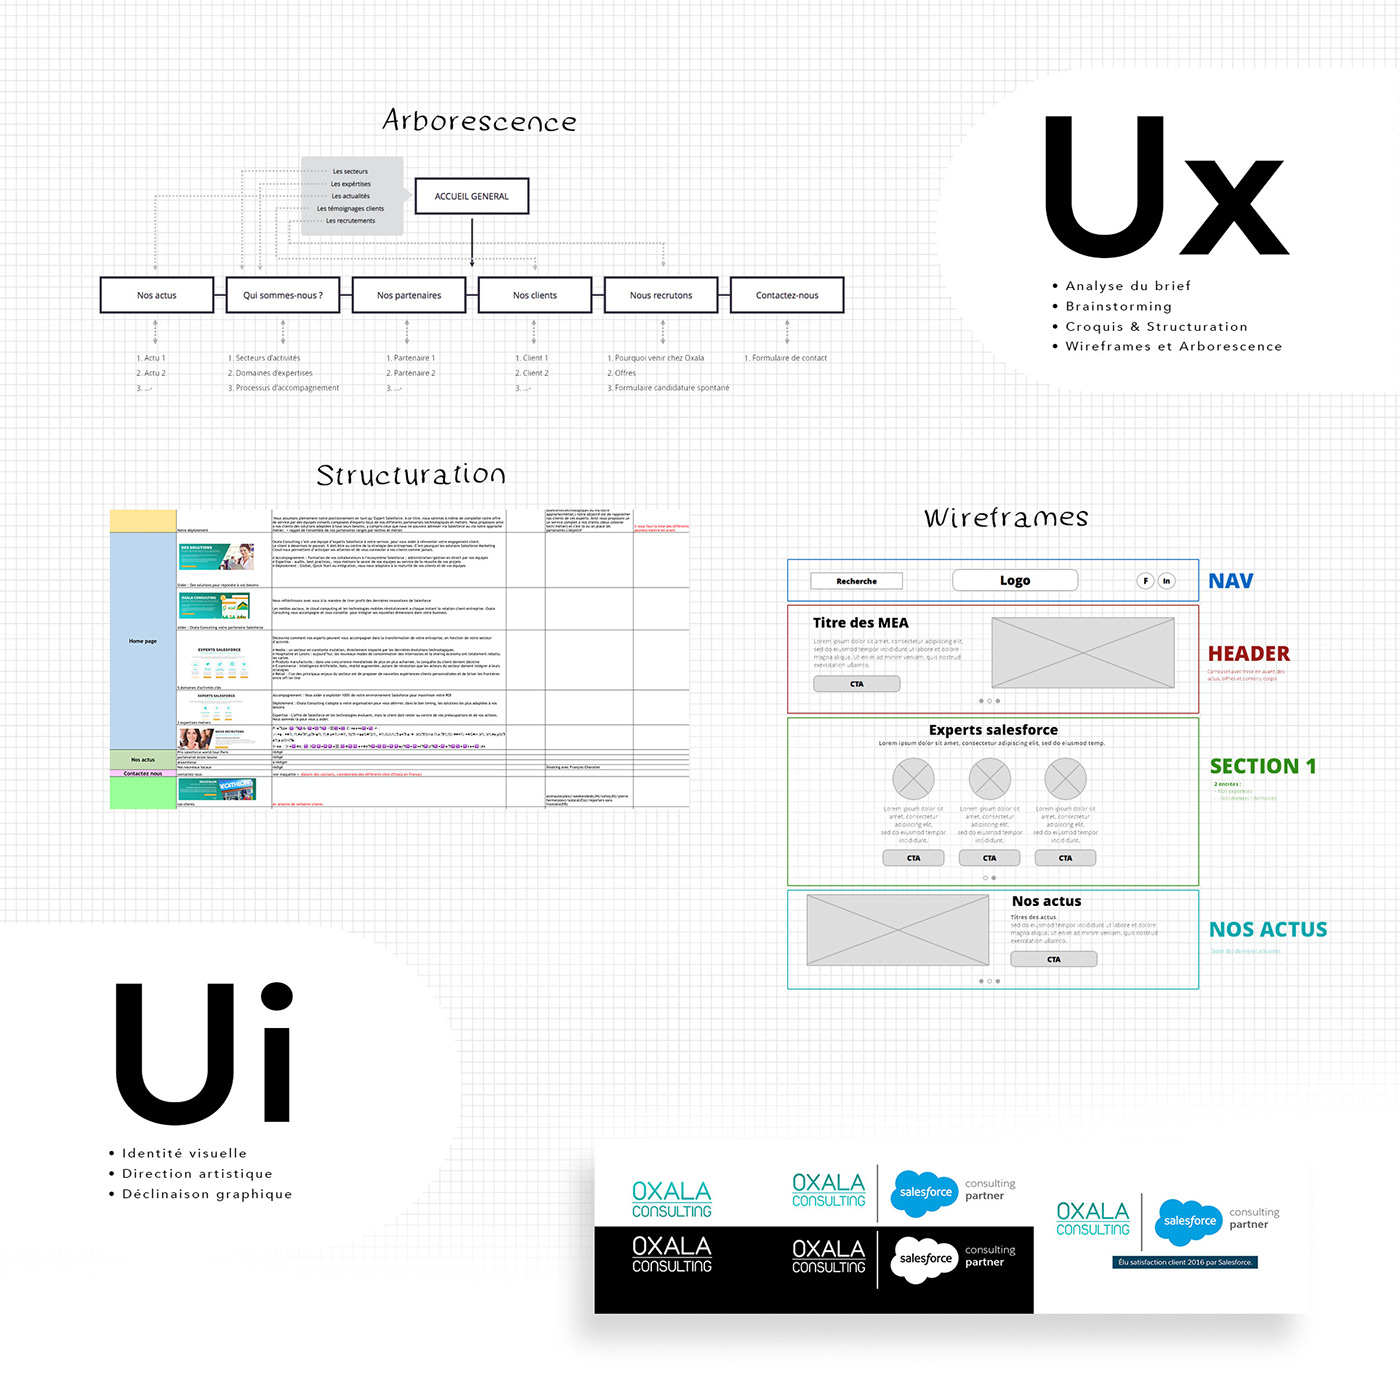 Webdesign direction artistique UX design ui design color scroll Website